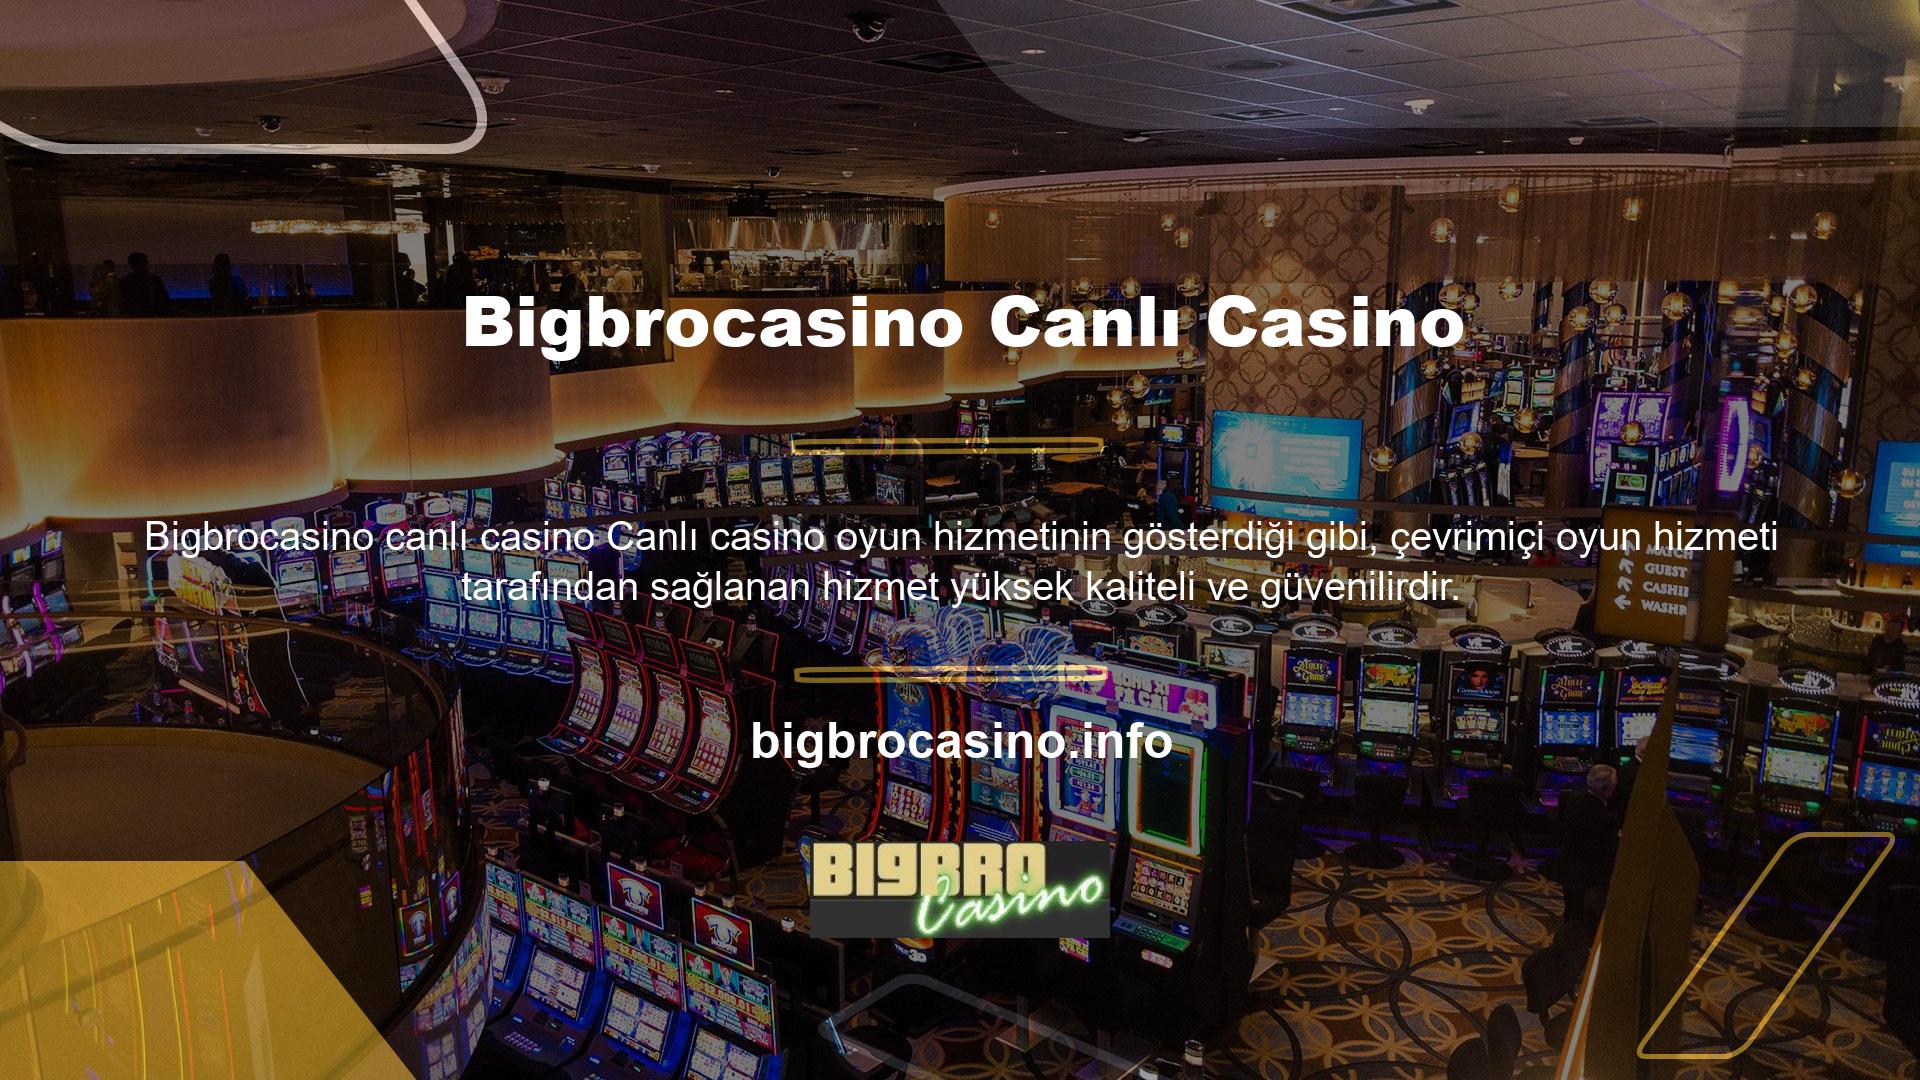 Bigbrocasino tüm kullanıcılarına canlı casino oyunları oynama imkanı sunmaktadır